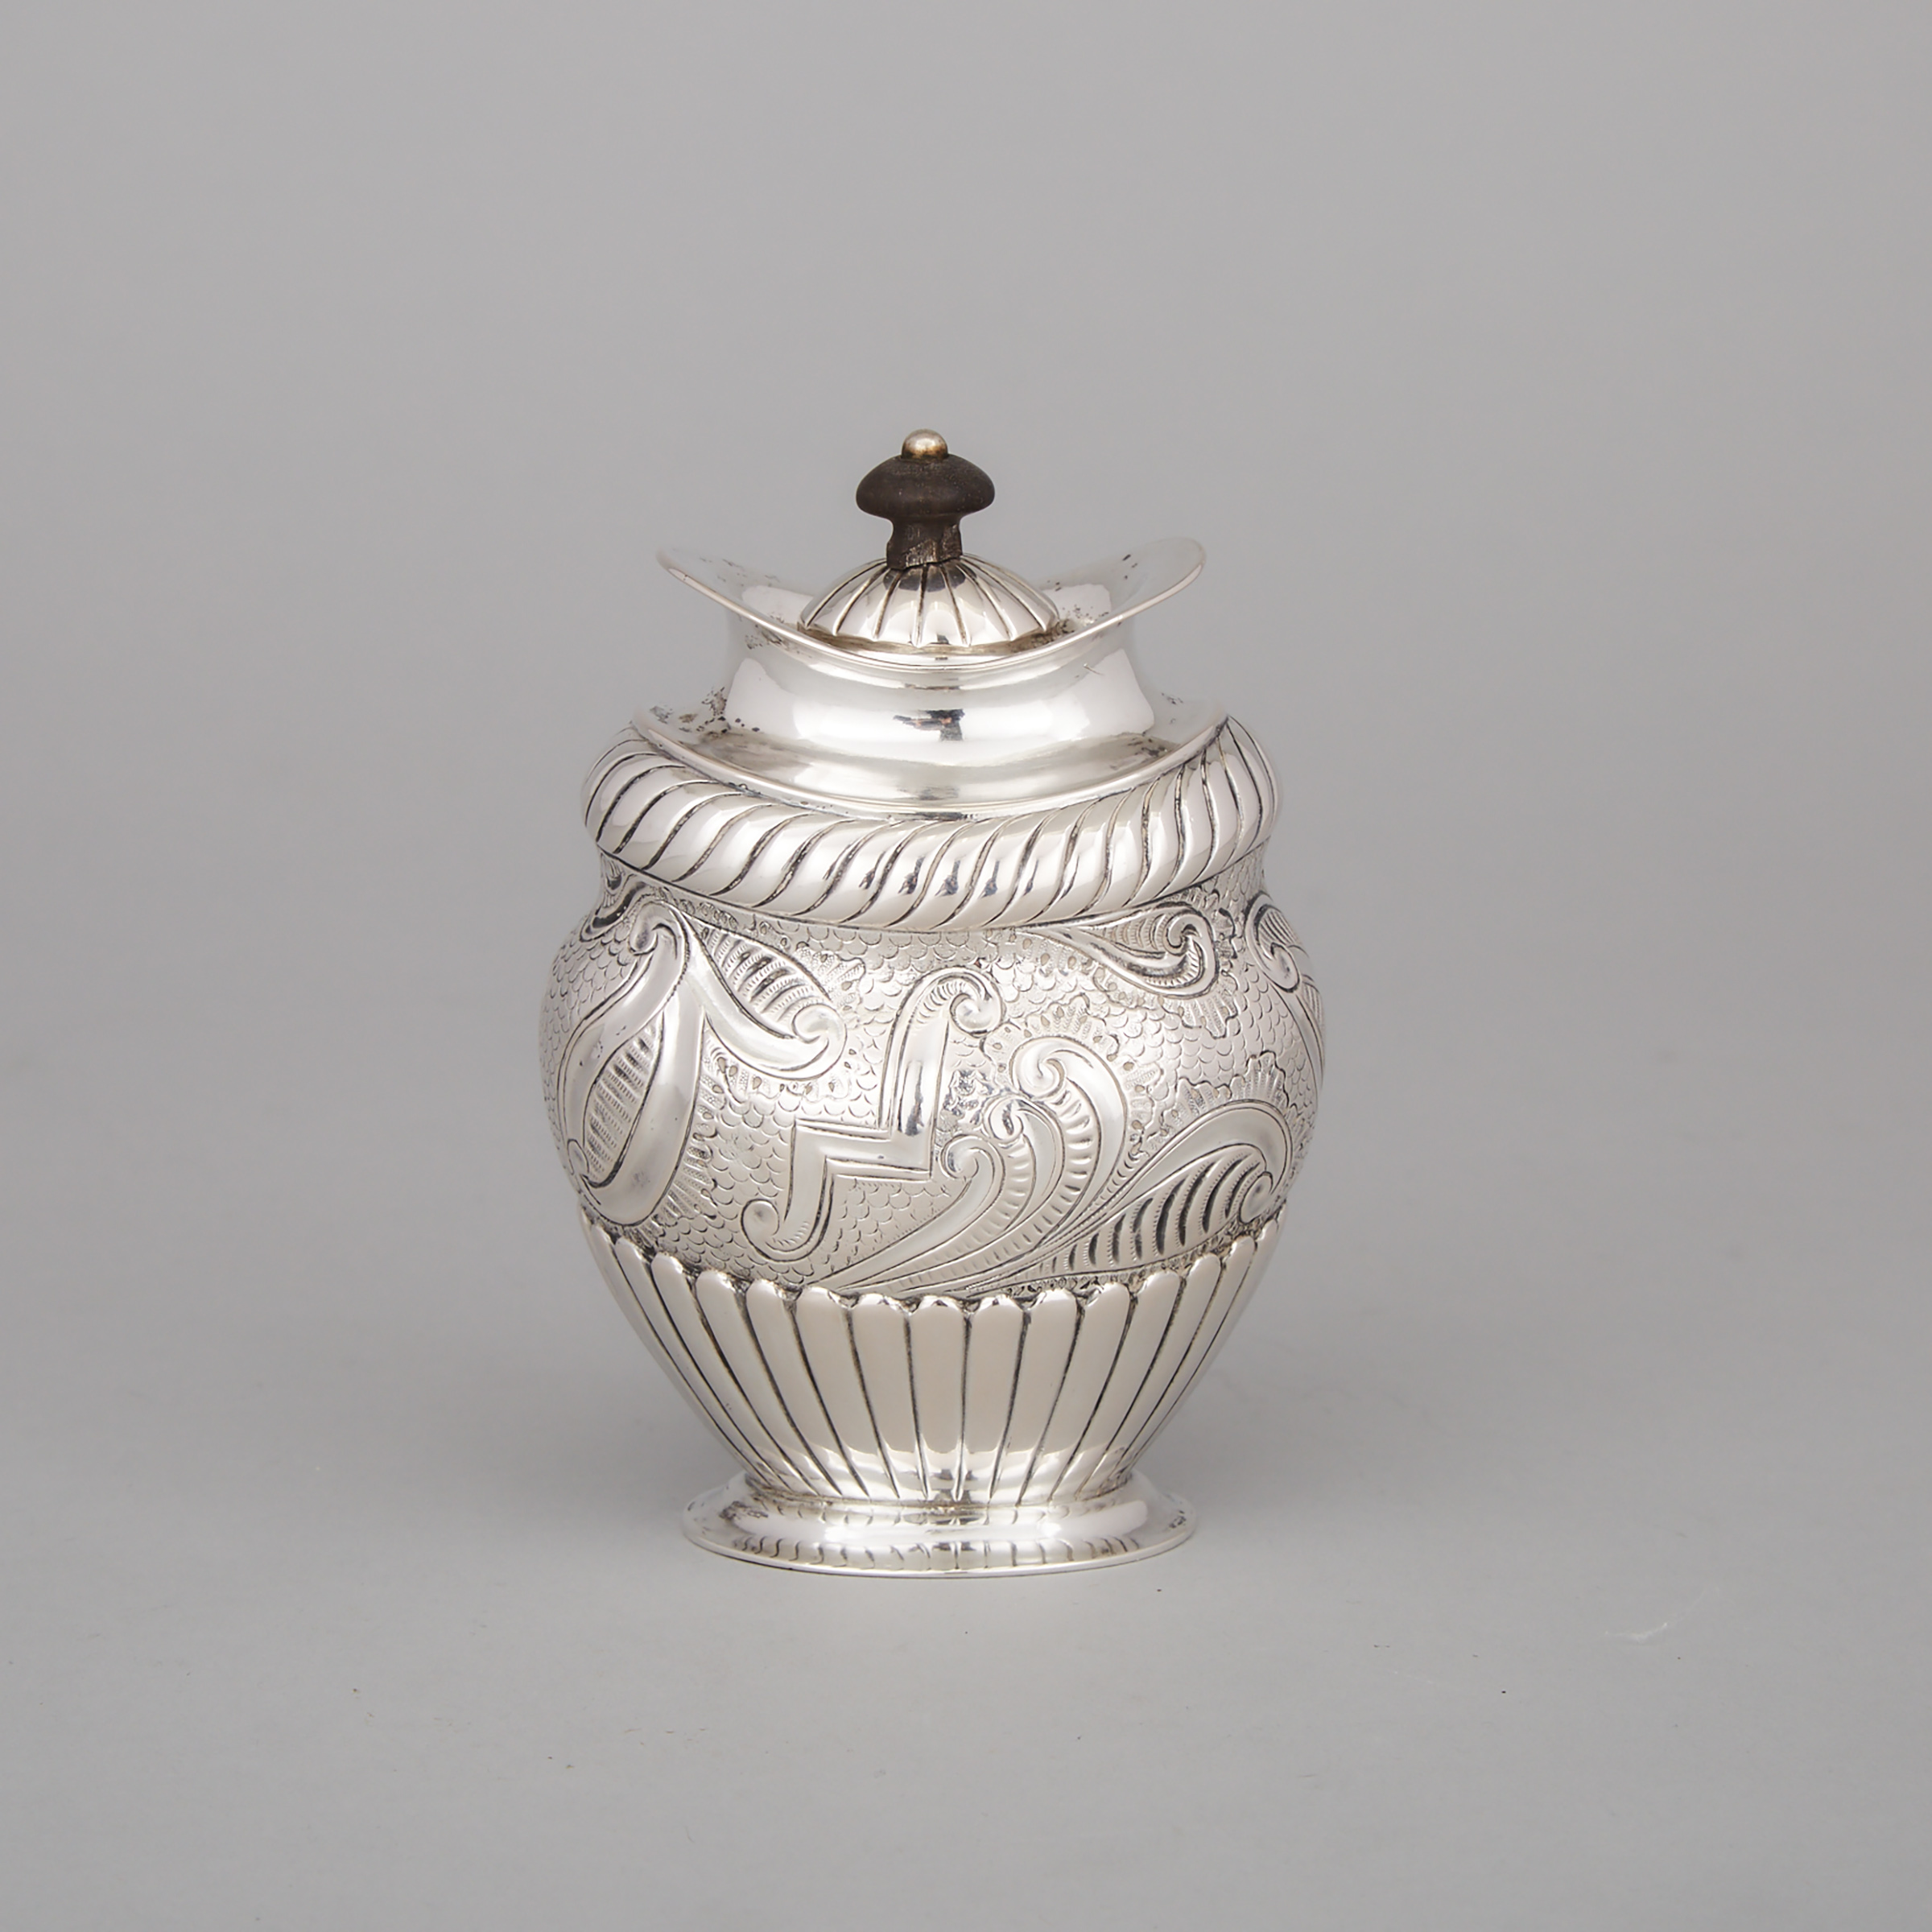 Danish Silver Tea Caddy, Johan Martin Lercke, Copenhagen, 1819